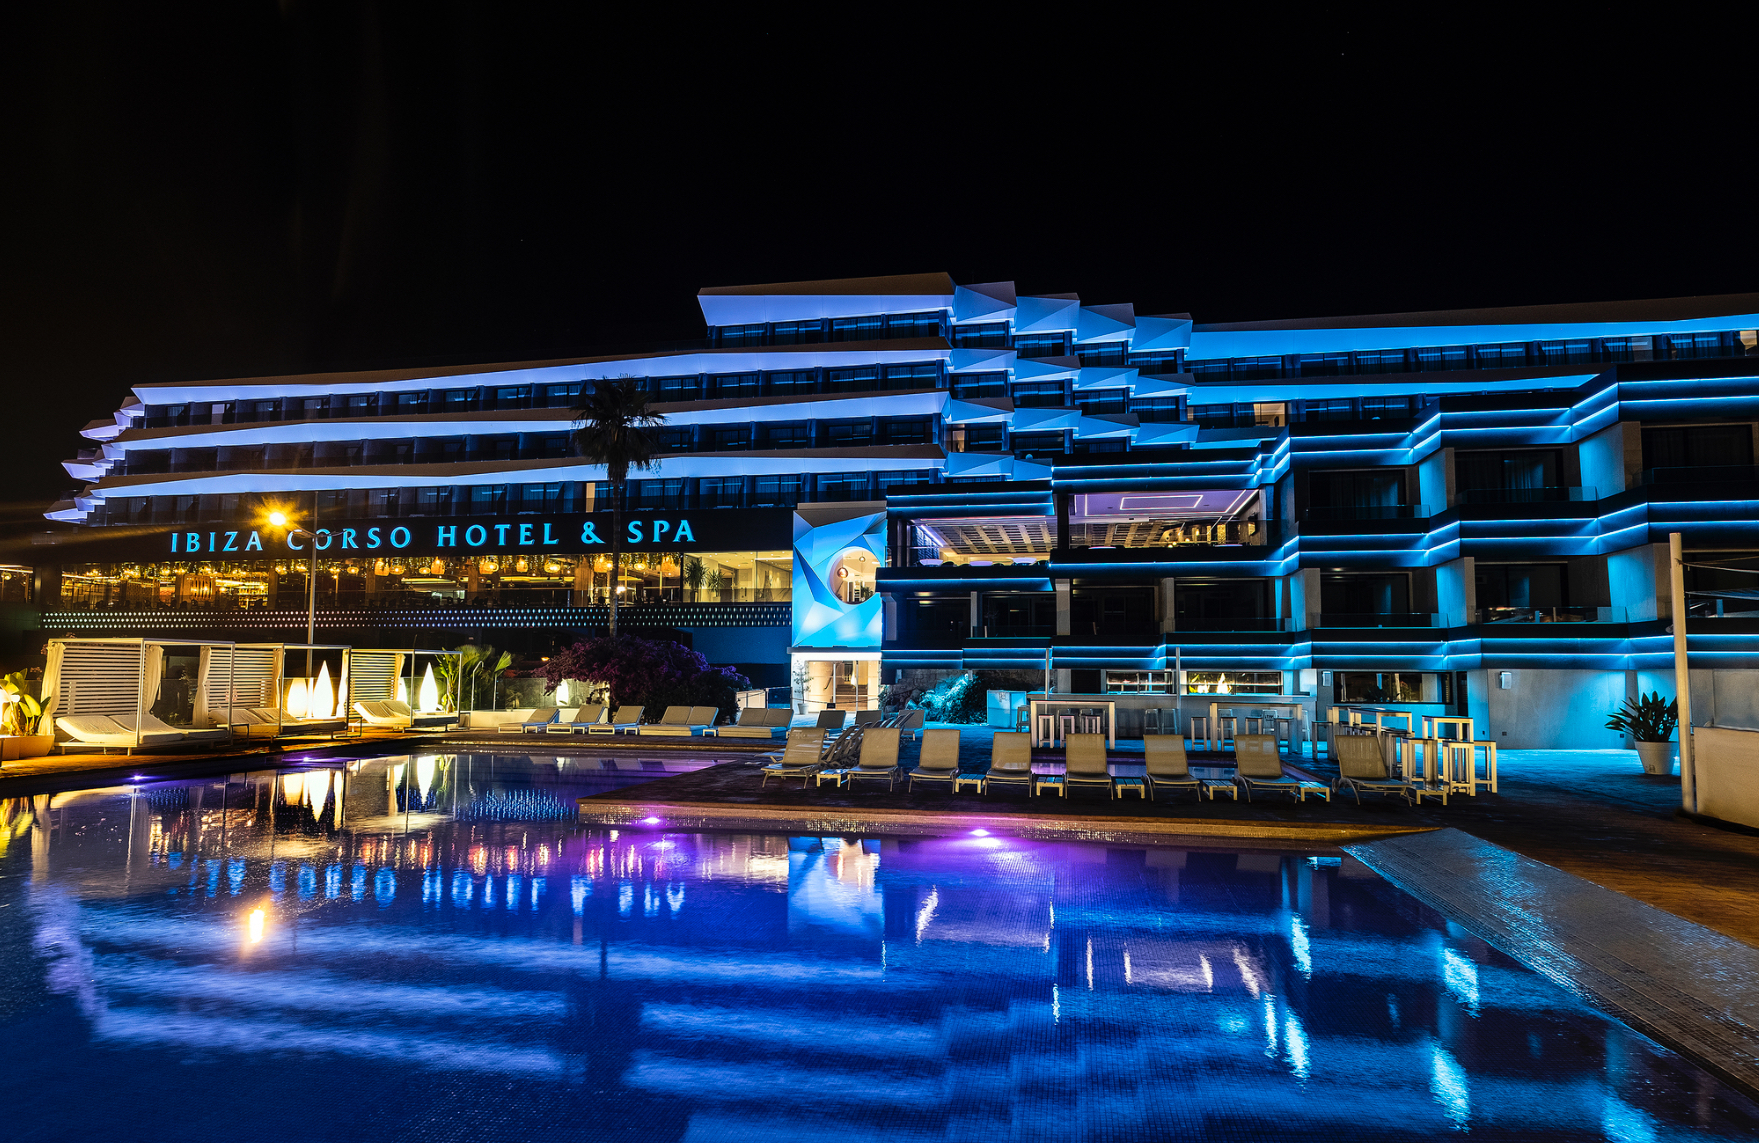 Ibiza Corso Hotel